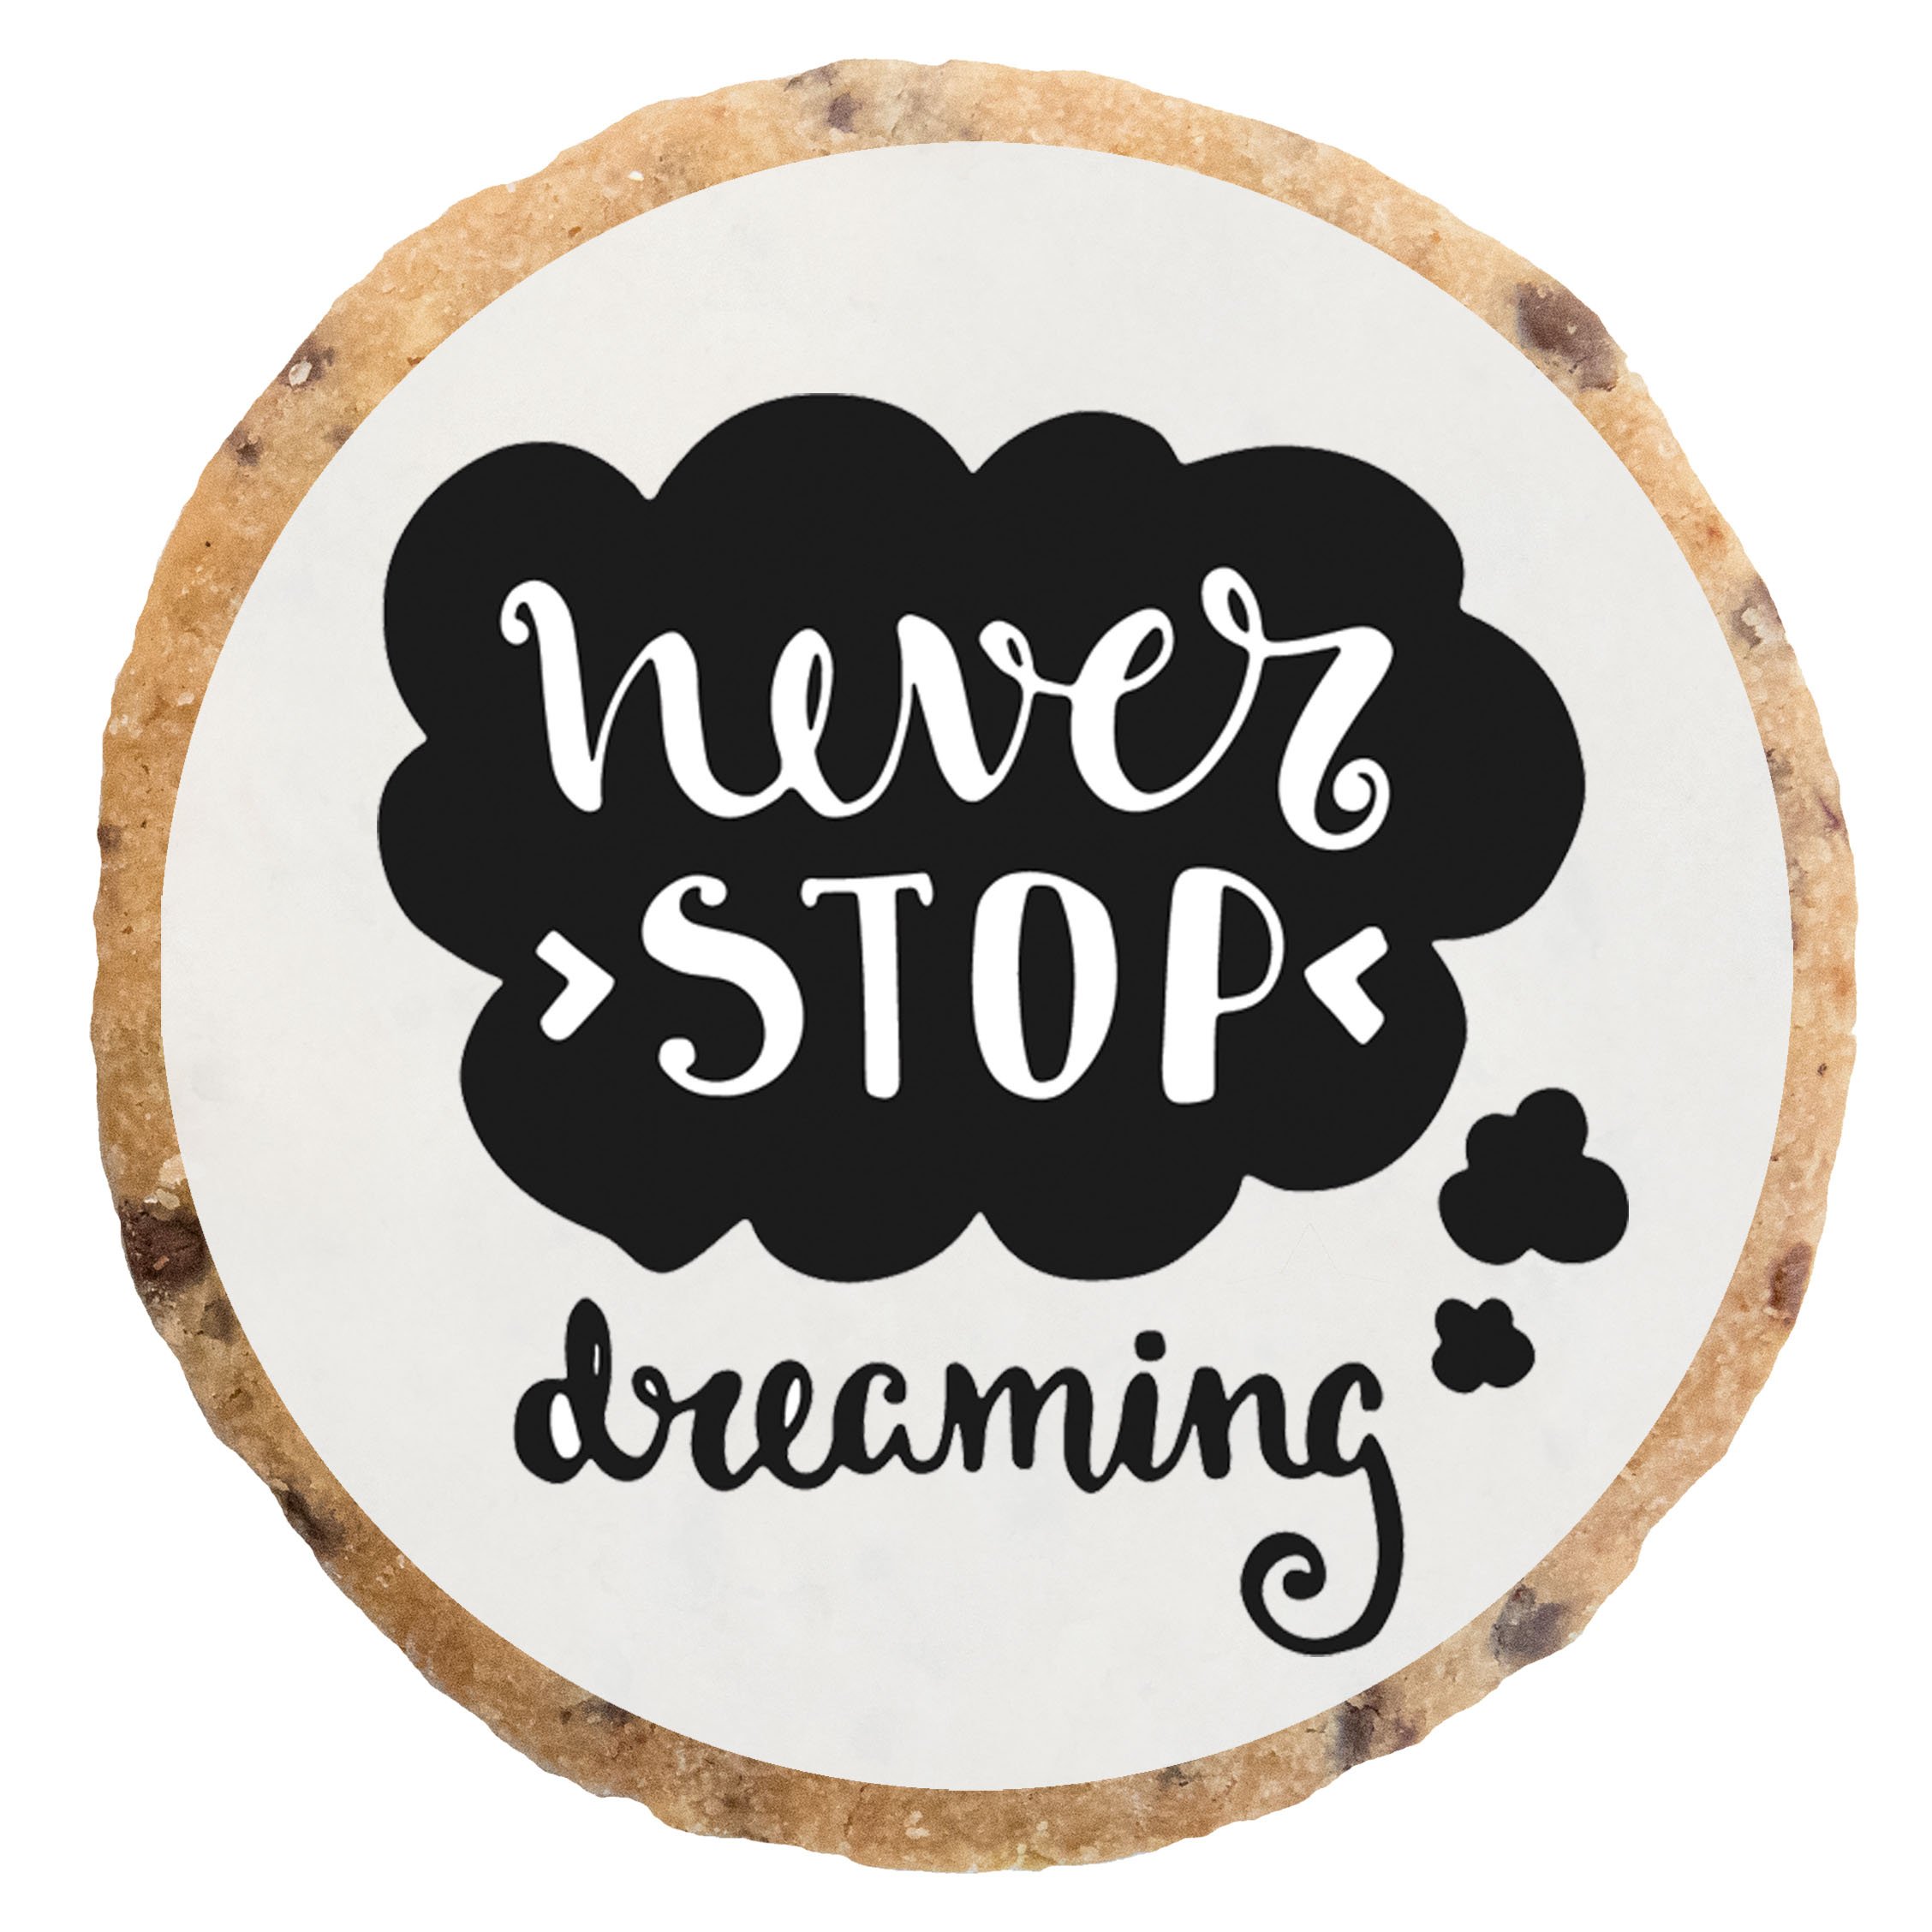 "Never stop dreaming" MotivKEKS